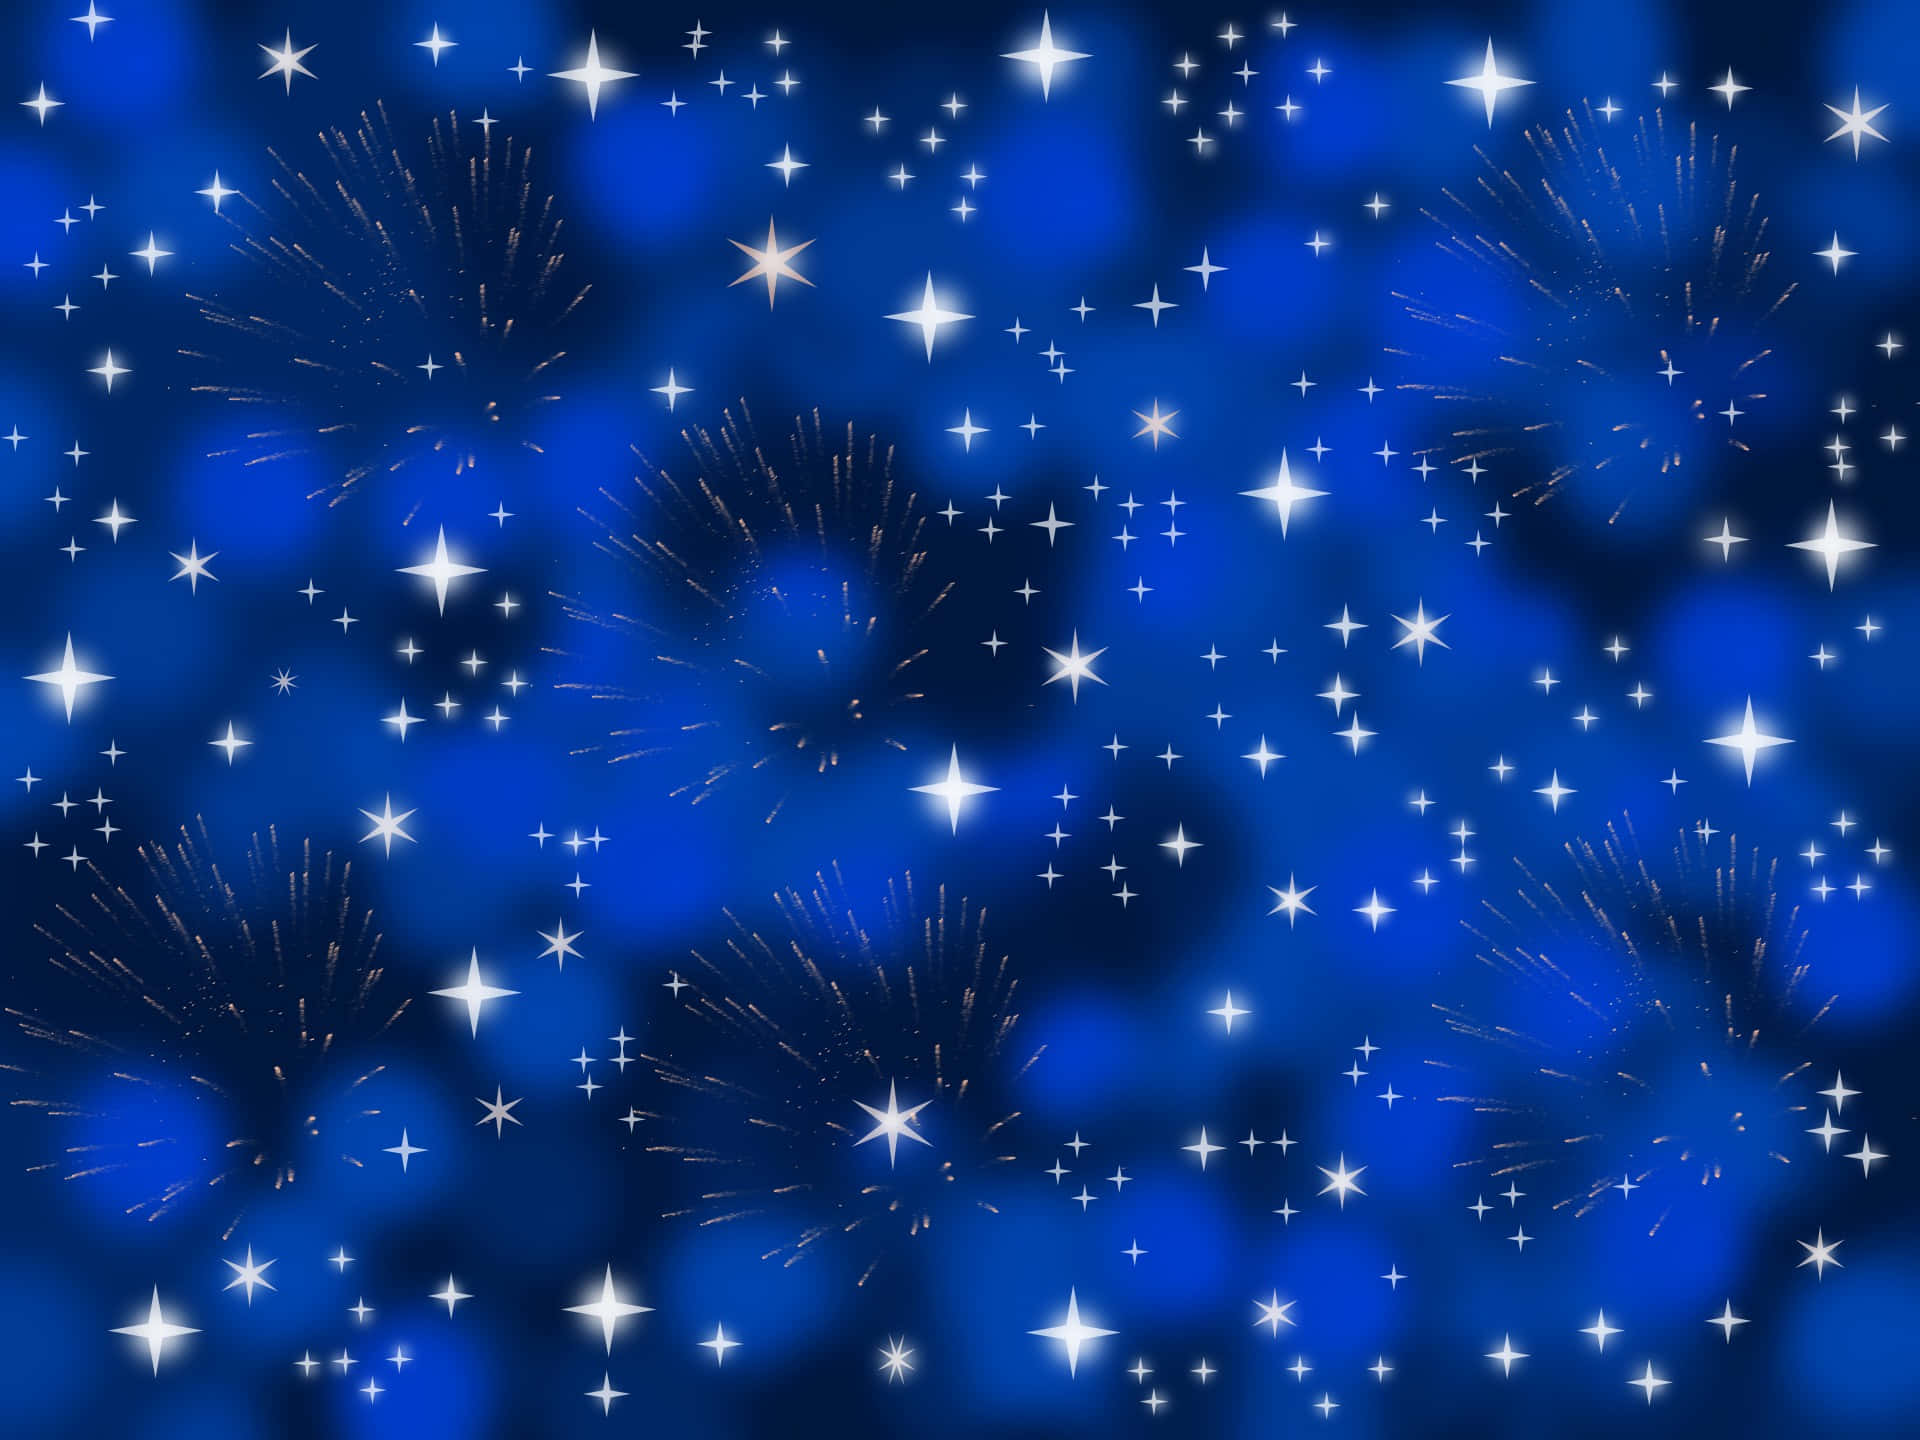 Estrellasazules Vibrantes En El Cielo Nocturno.